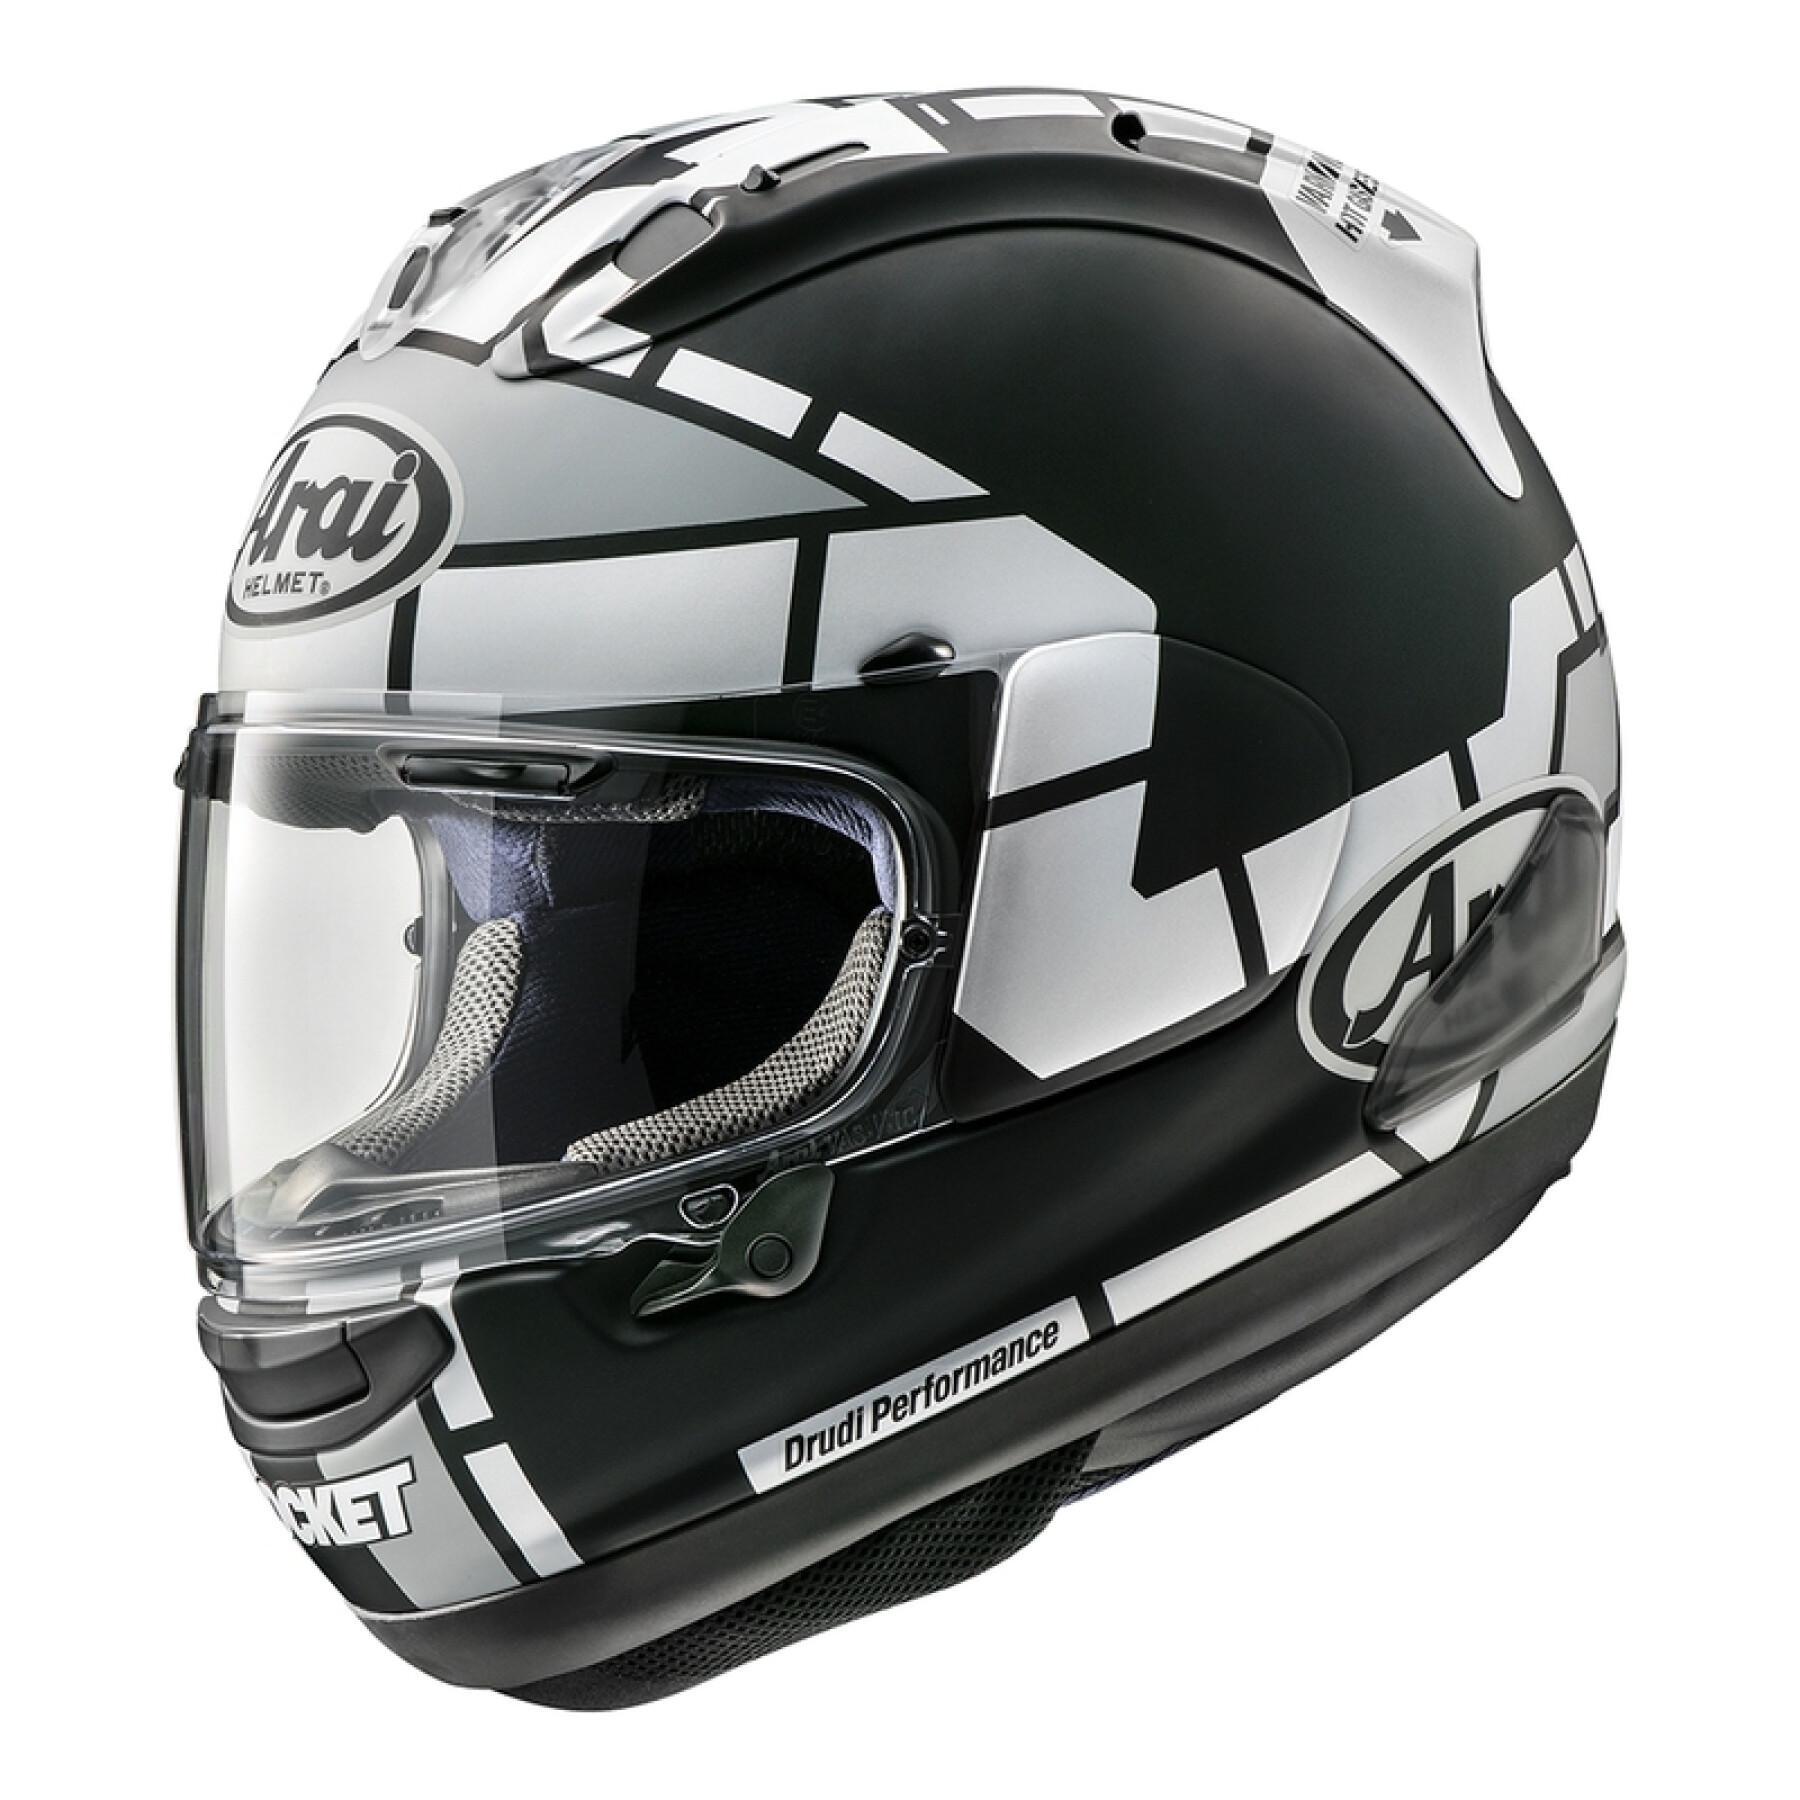 Full face motorcycle helmet Arai RX-7V - Vinales 12